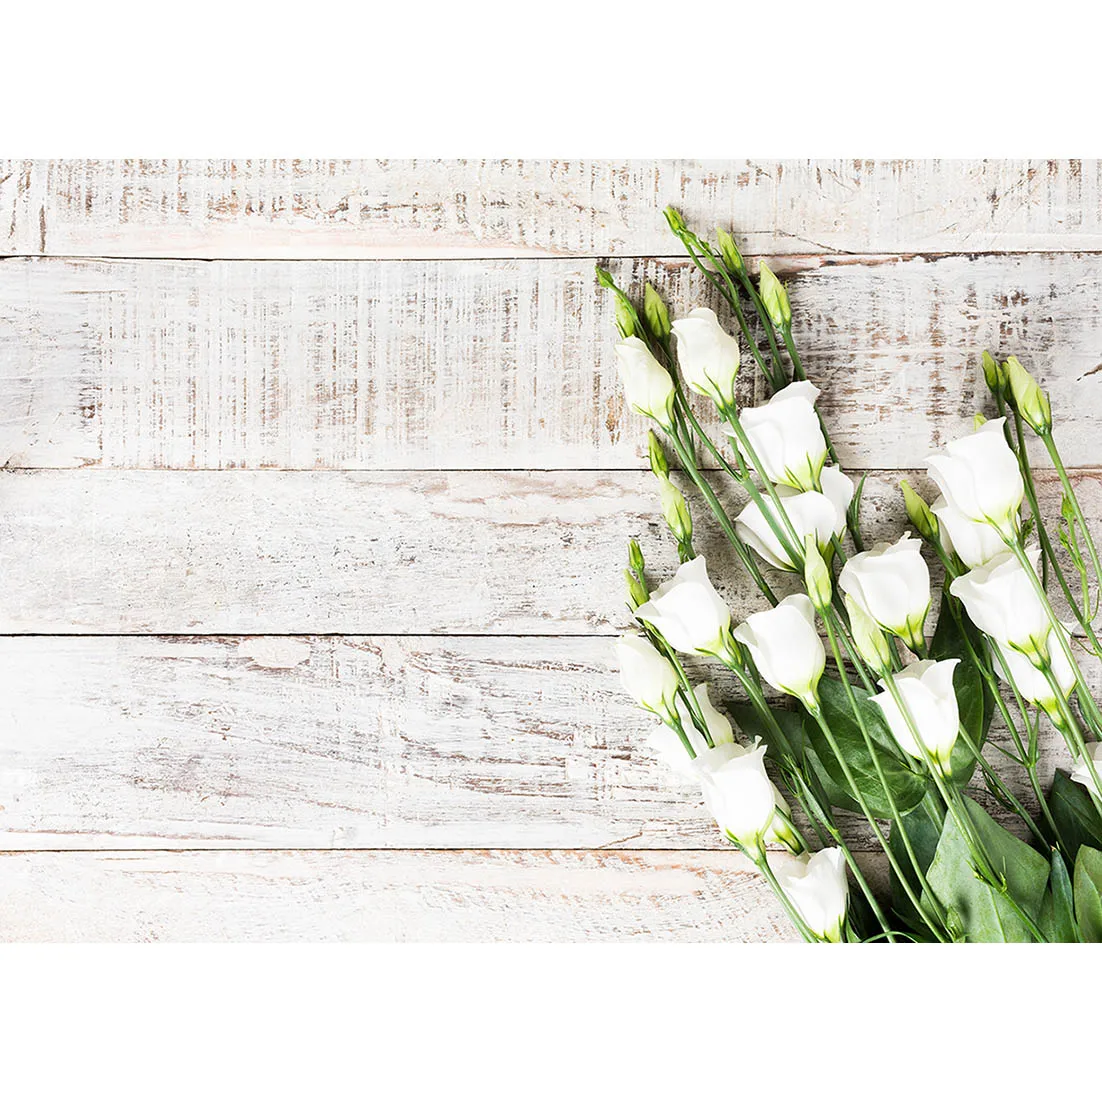 

Фон для фотосъемки в стиле ретро с изображением белых цветов деревянных досок фон на заказ для любителей день Святого Валентина День рождения фон для фотосъемки